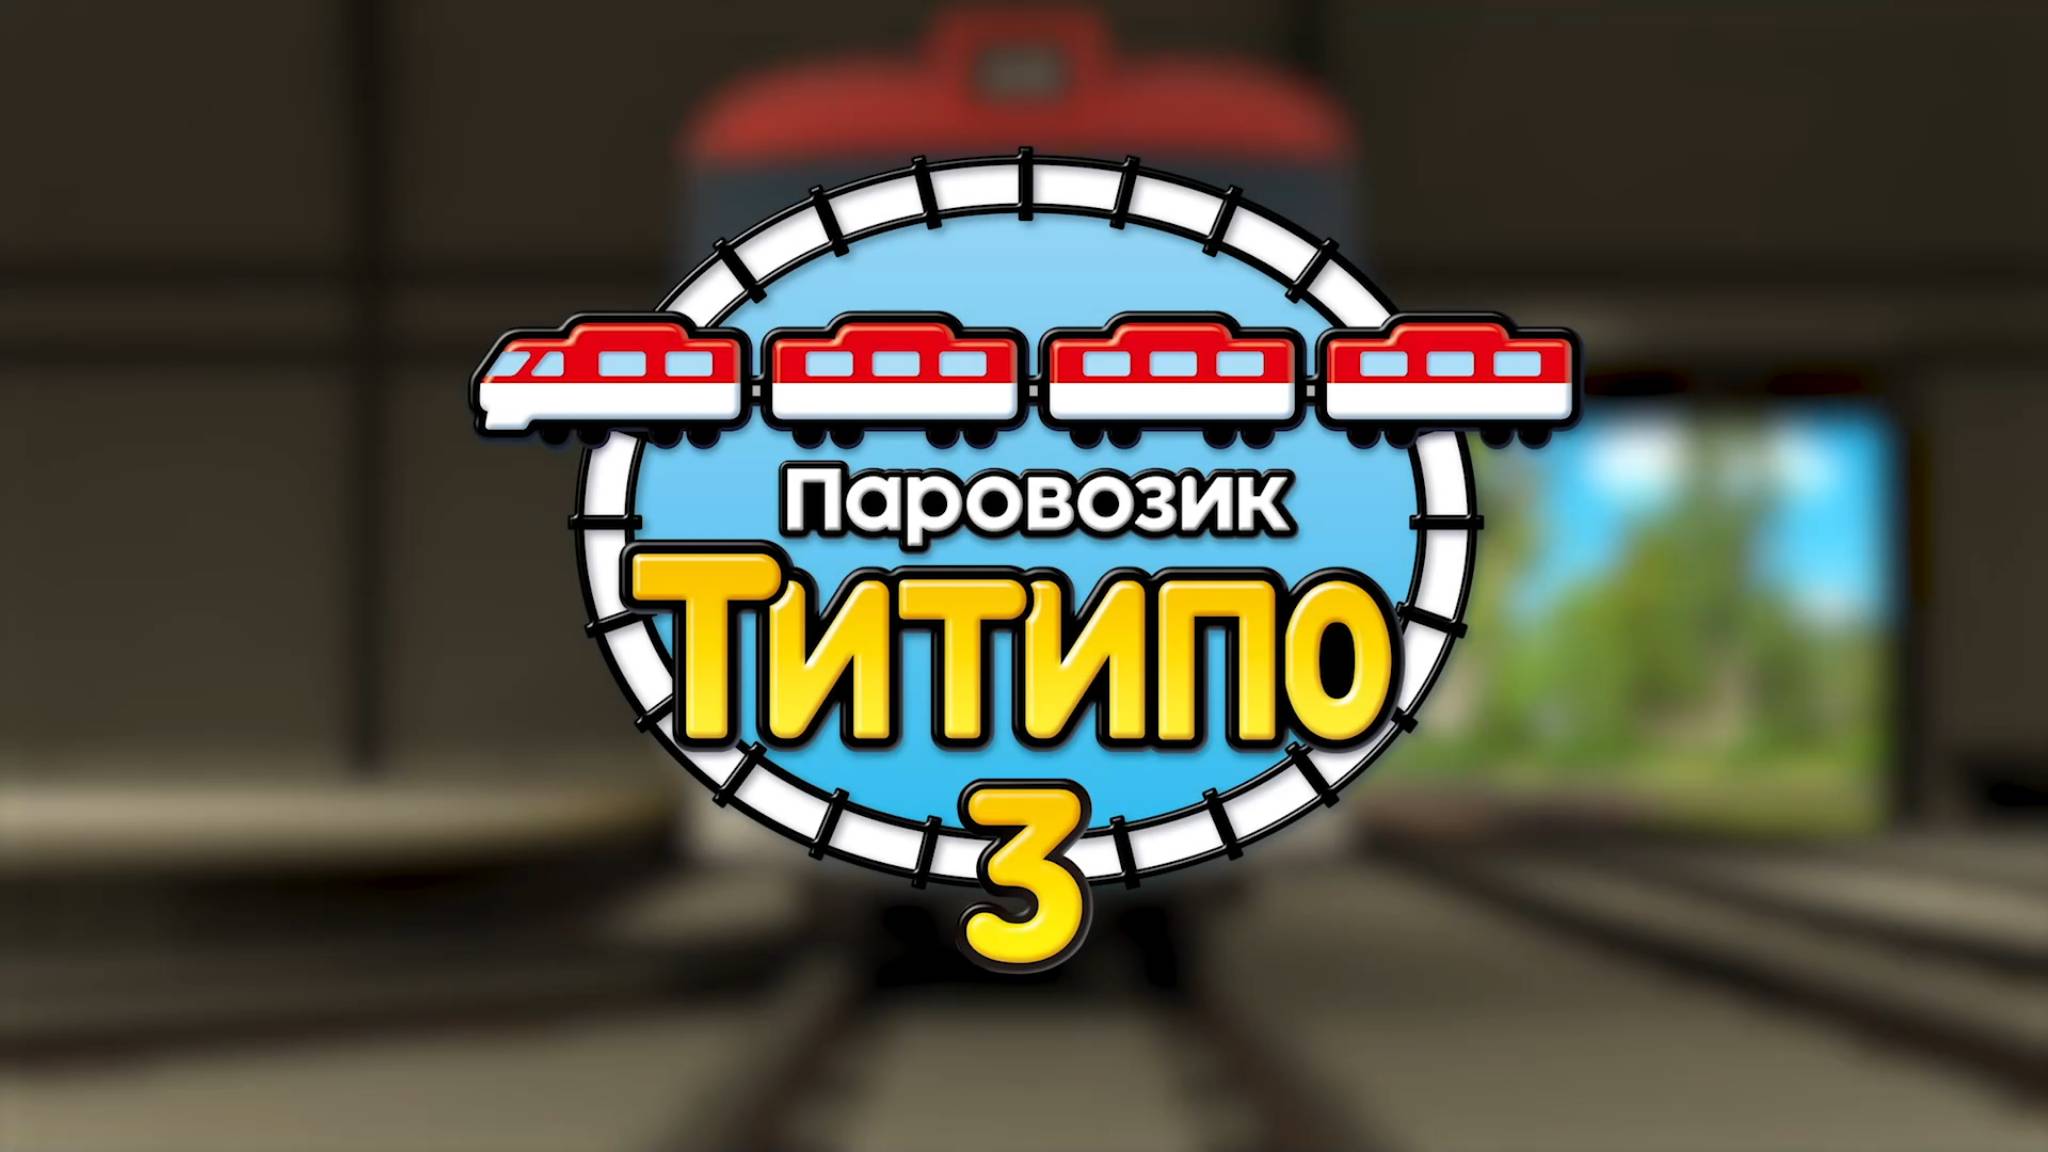 Паровозик Титипо, 3 сезон, 26 серия. Награда «Лучший поезд»